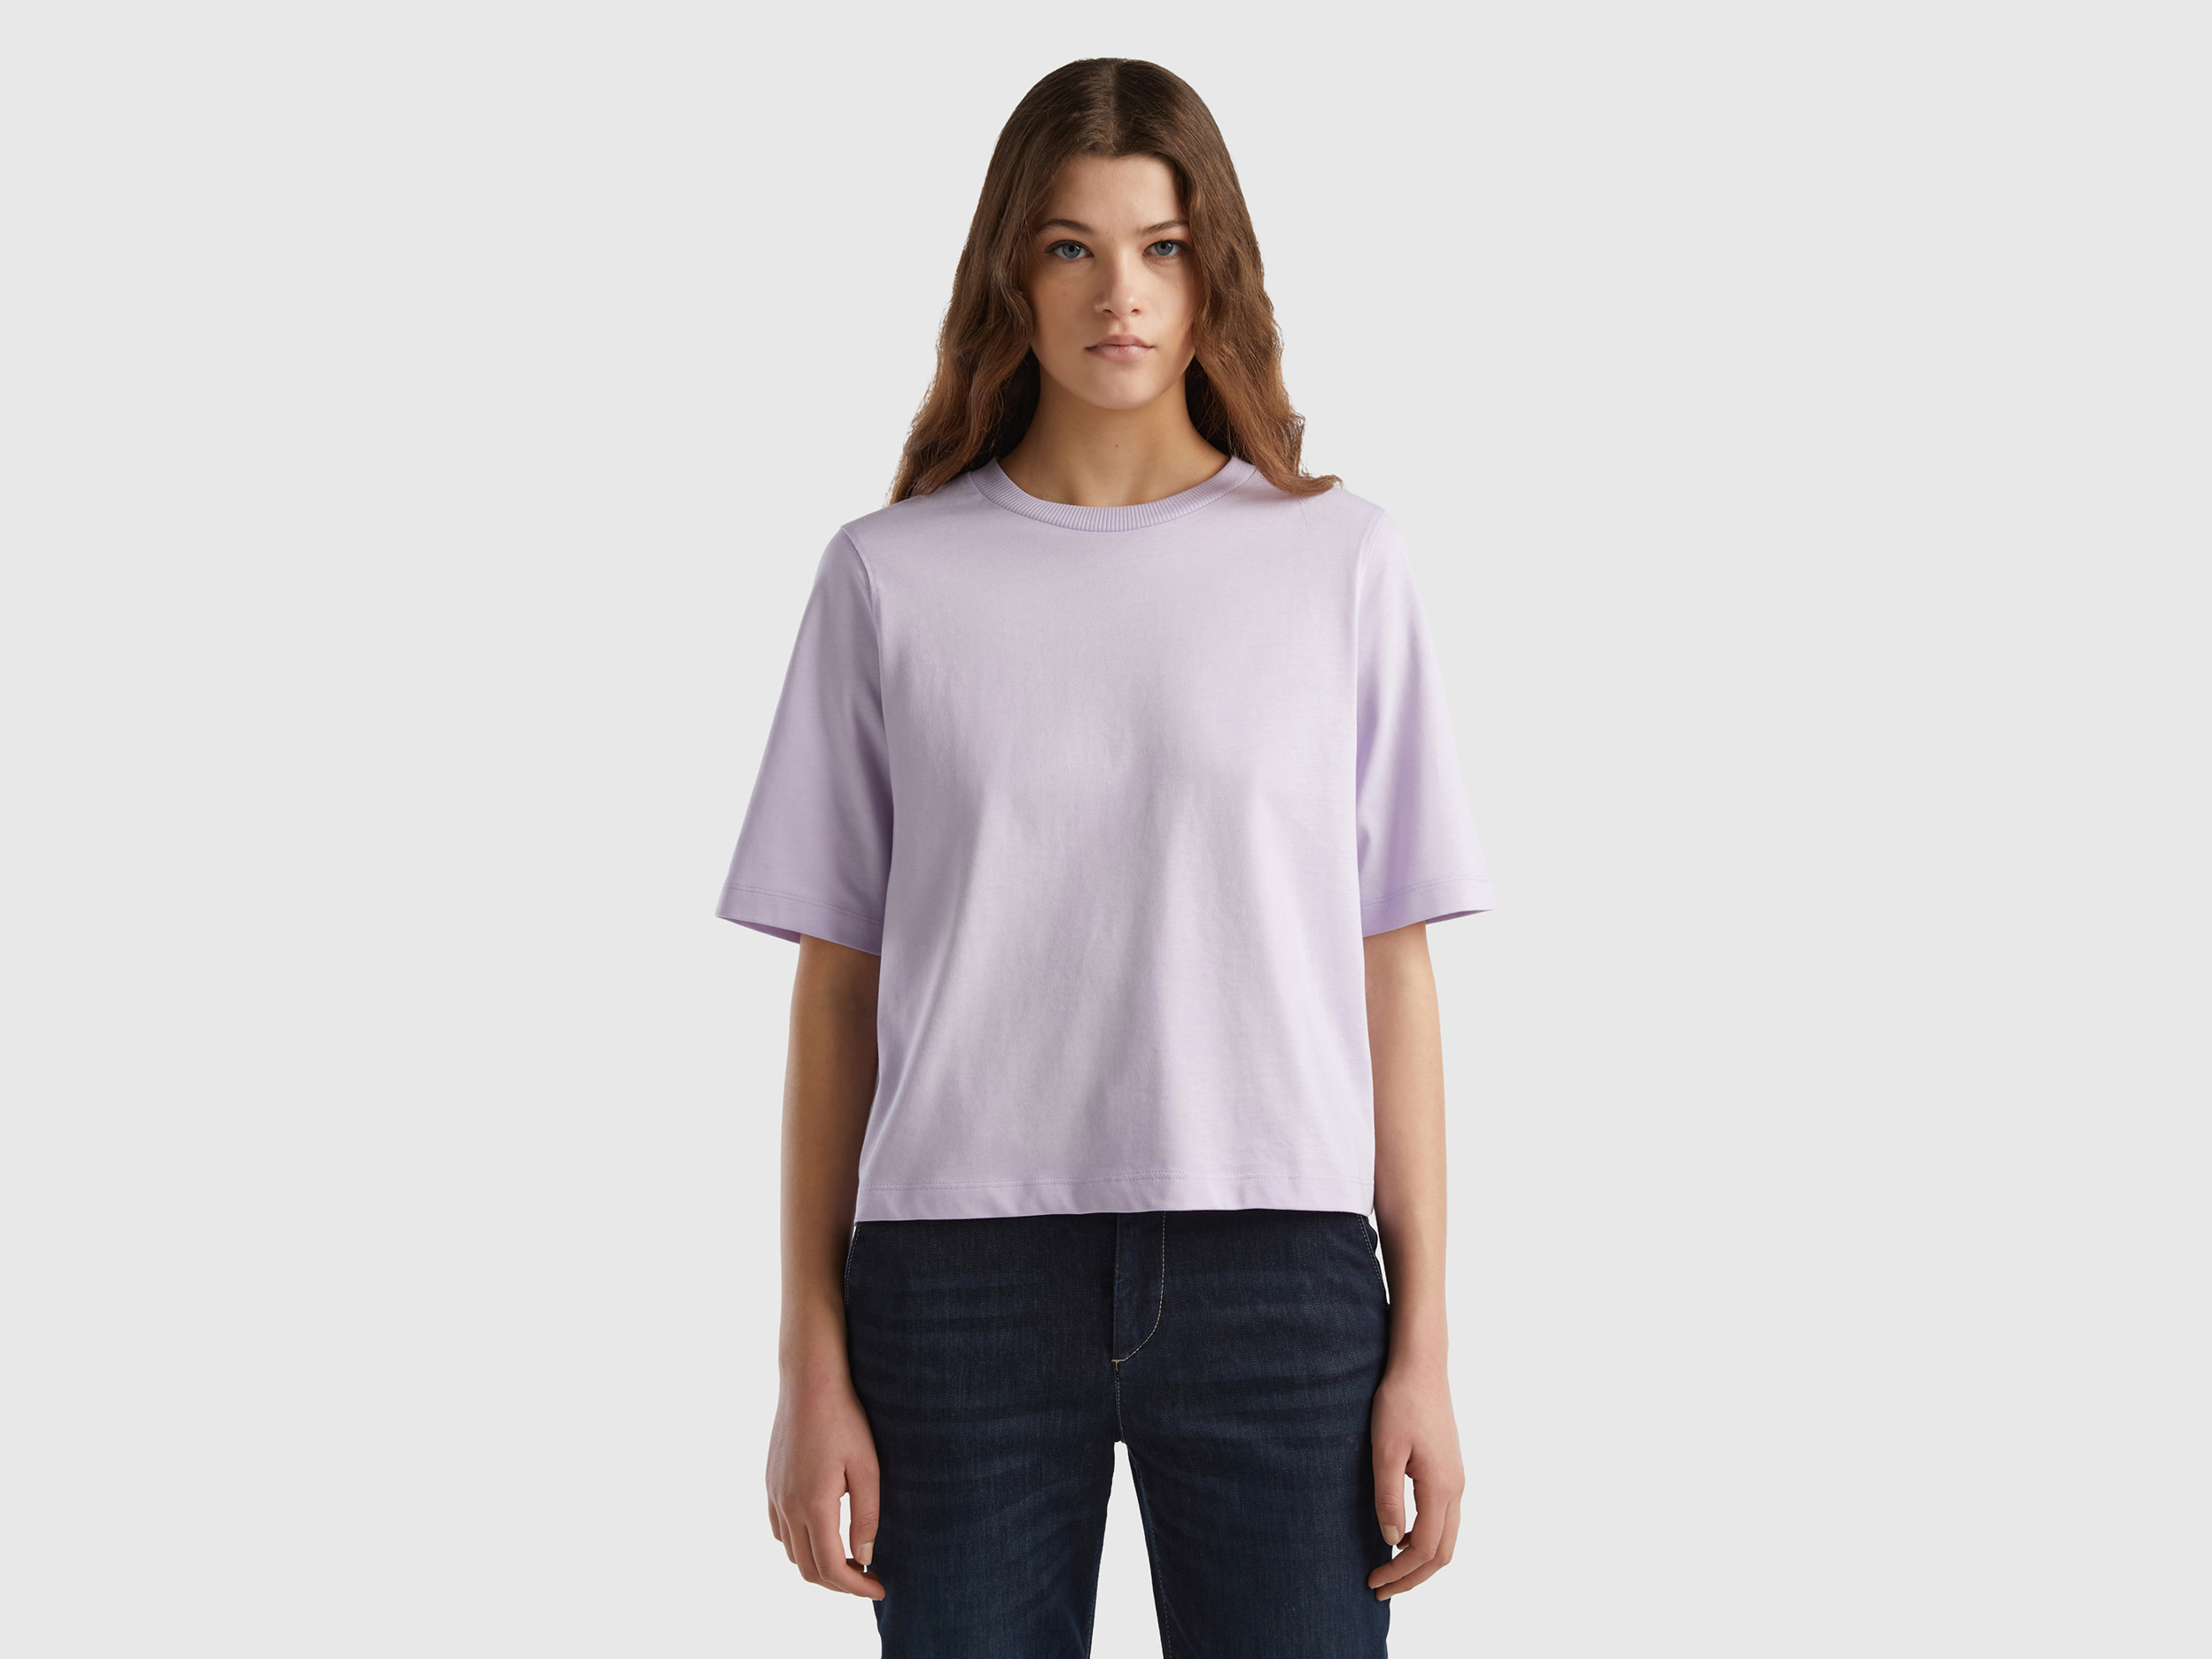 Benetton, 100% Cotton Boxy Fit T-shirt, size XXS, Lilac, Women